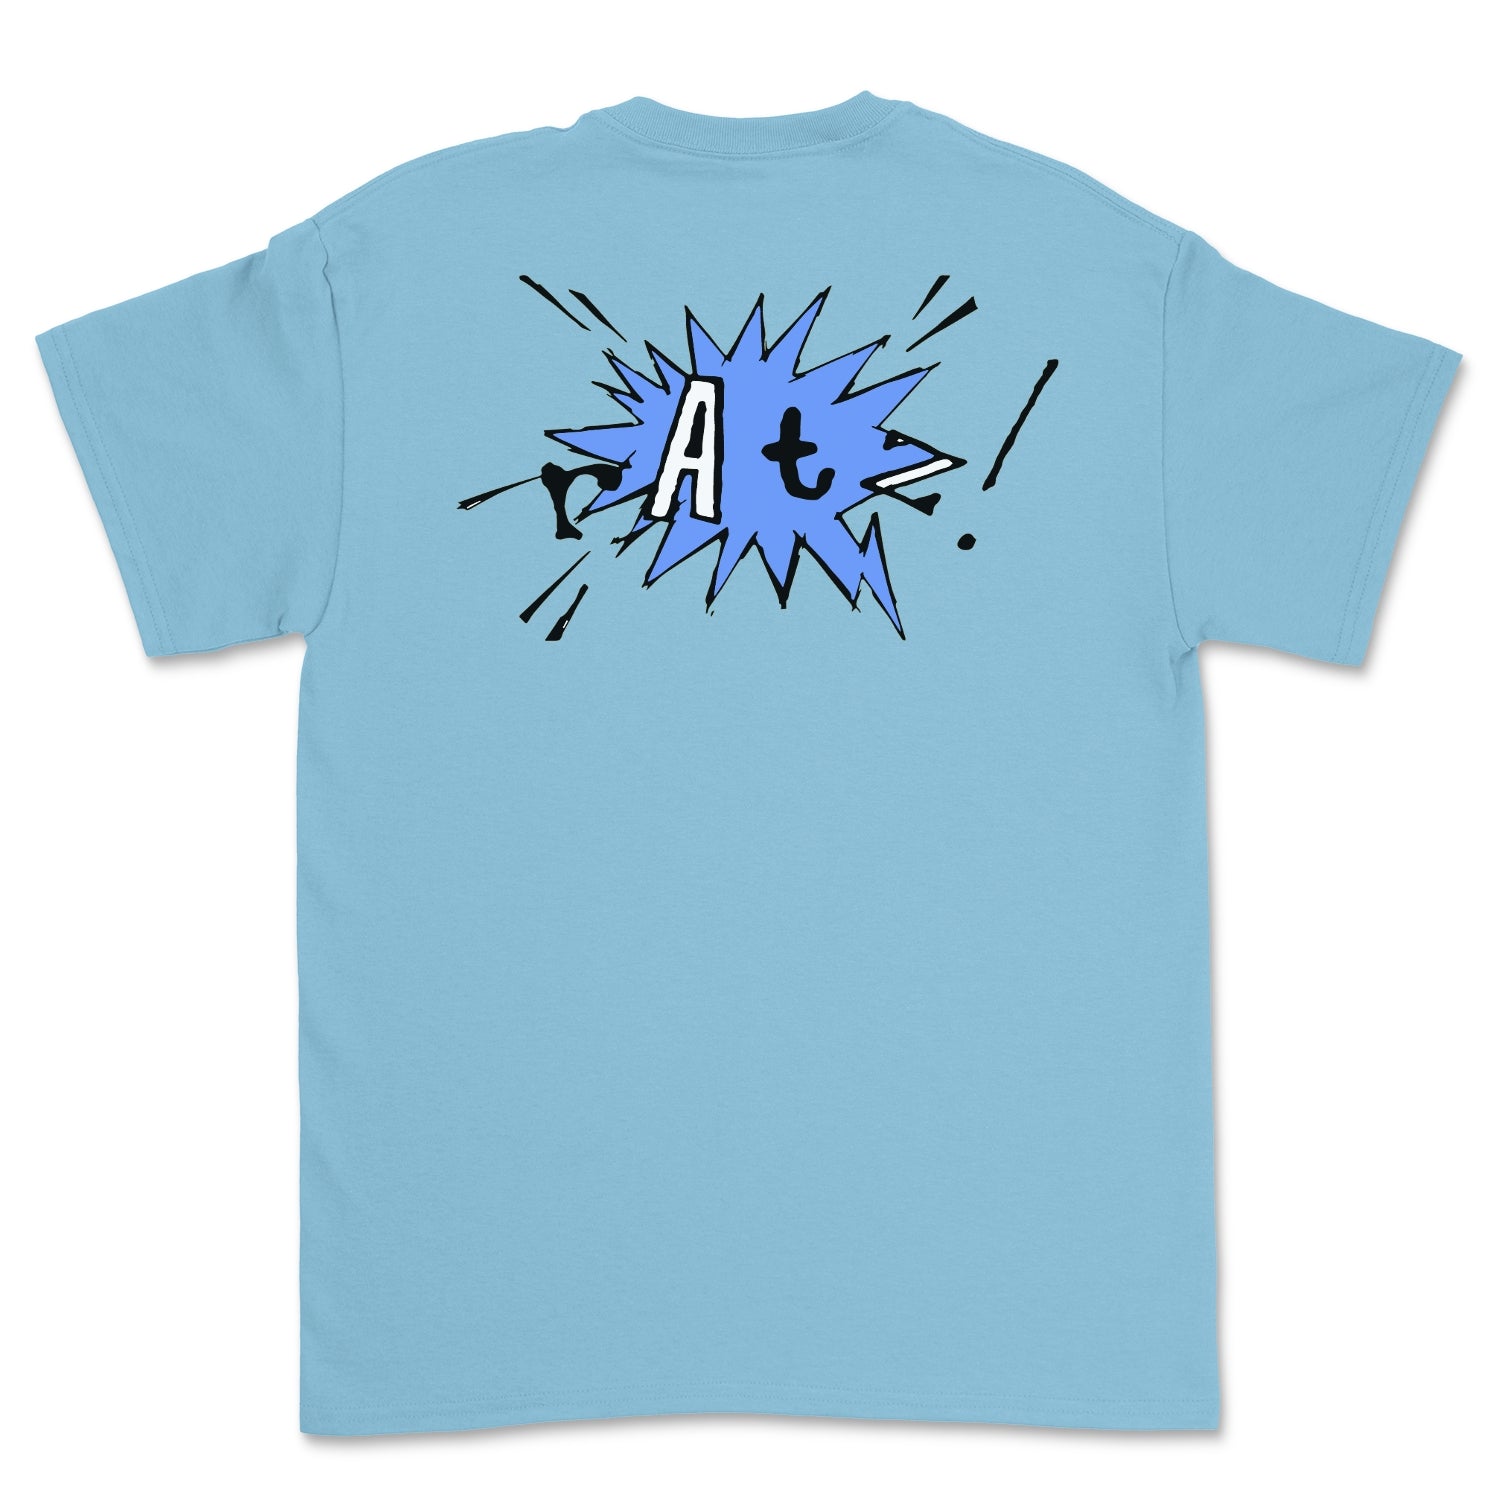 Ratz! Graphic Tee Shirt